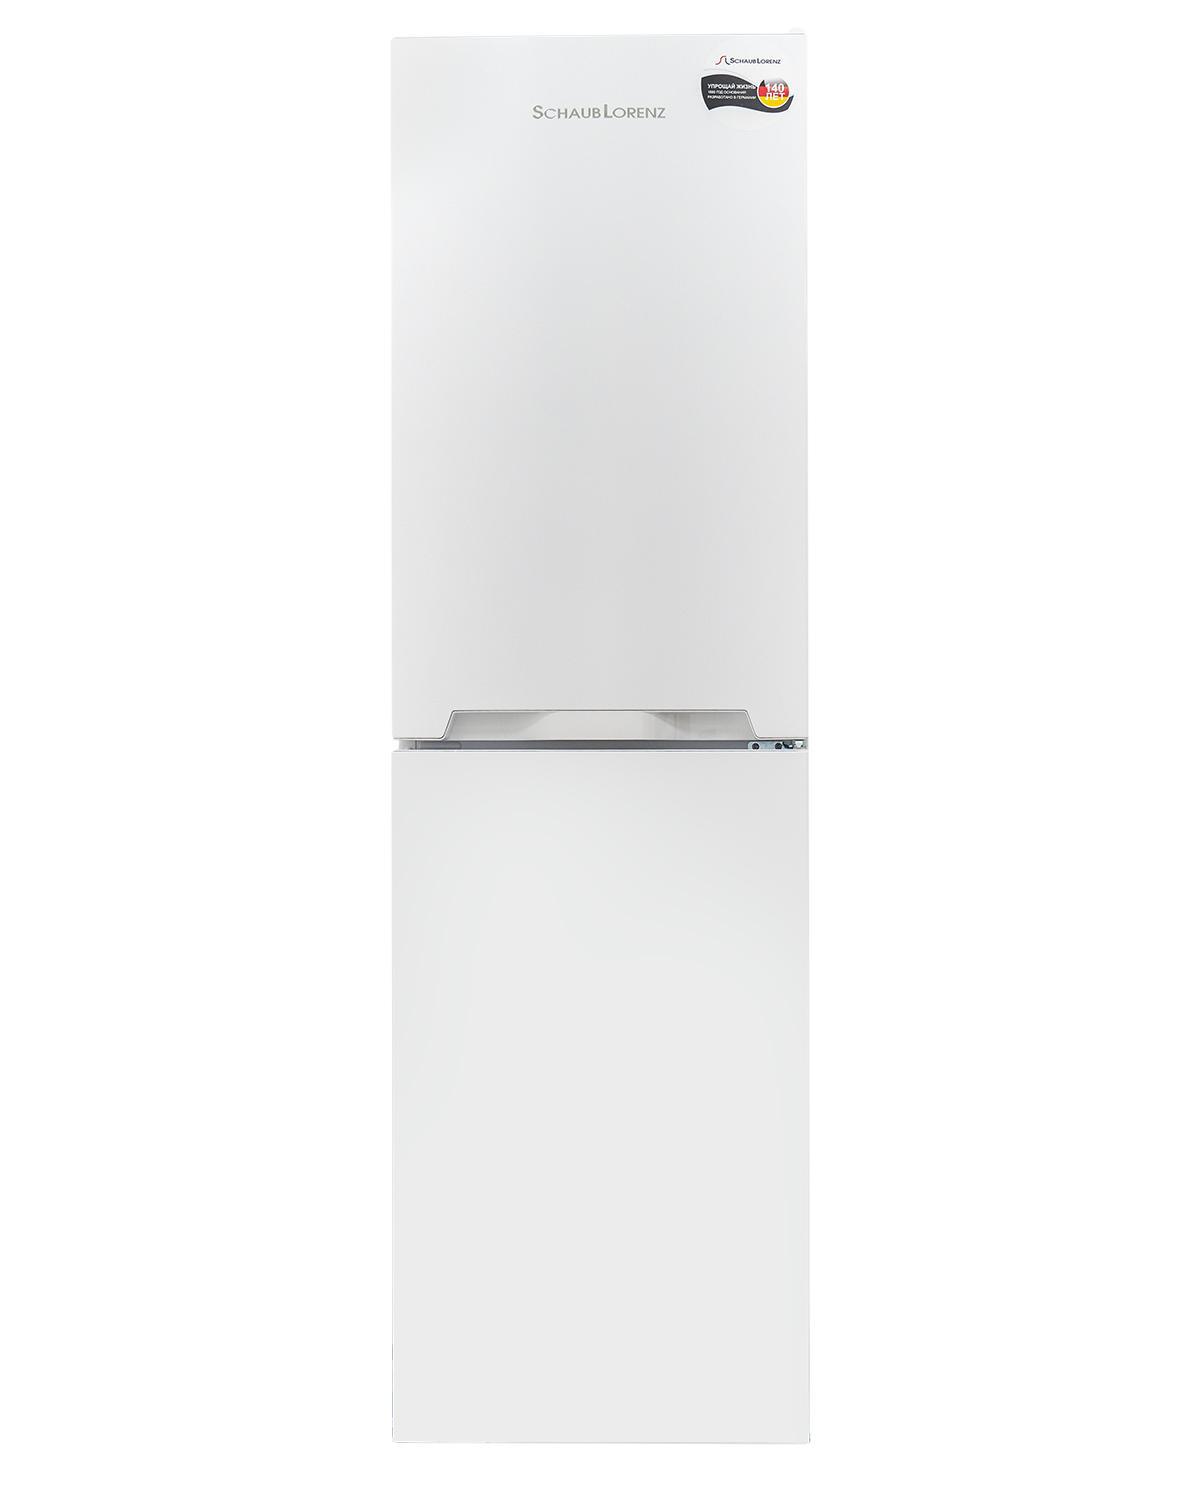 90259337 Отдельностоящий холодильник SLU S262W4M 54x183 см цвет белый STLM-0153064 SCHAUB LORENZ